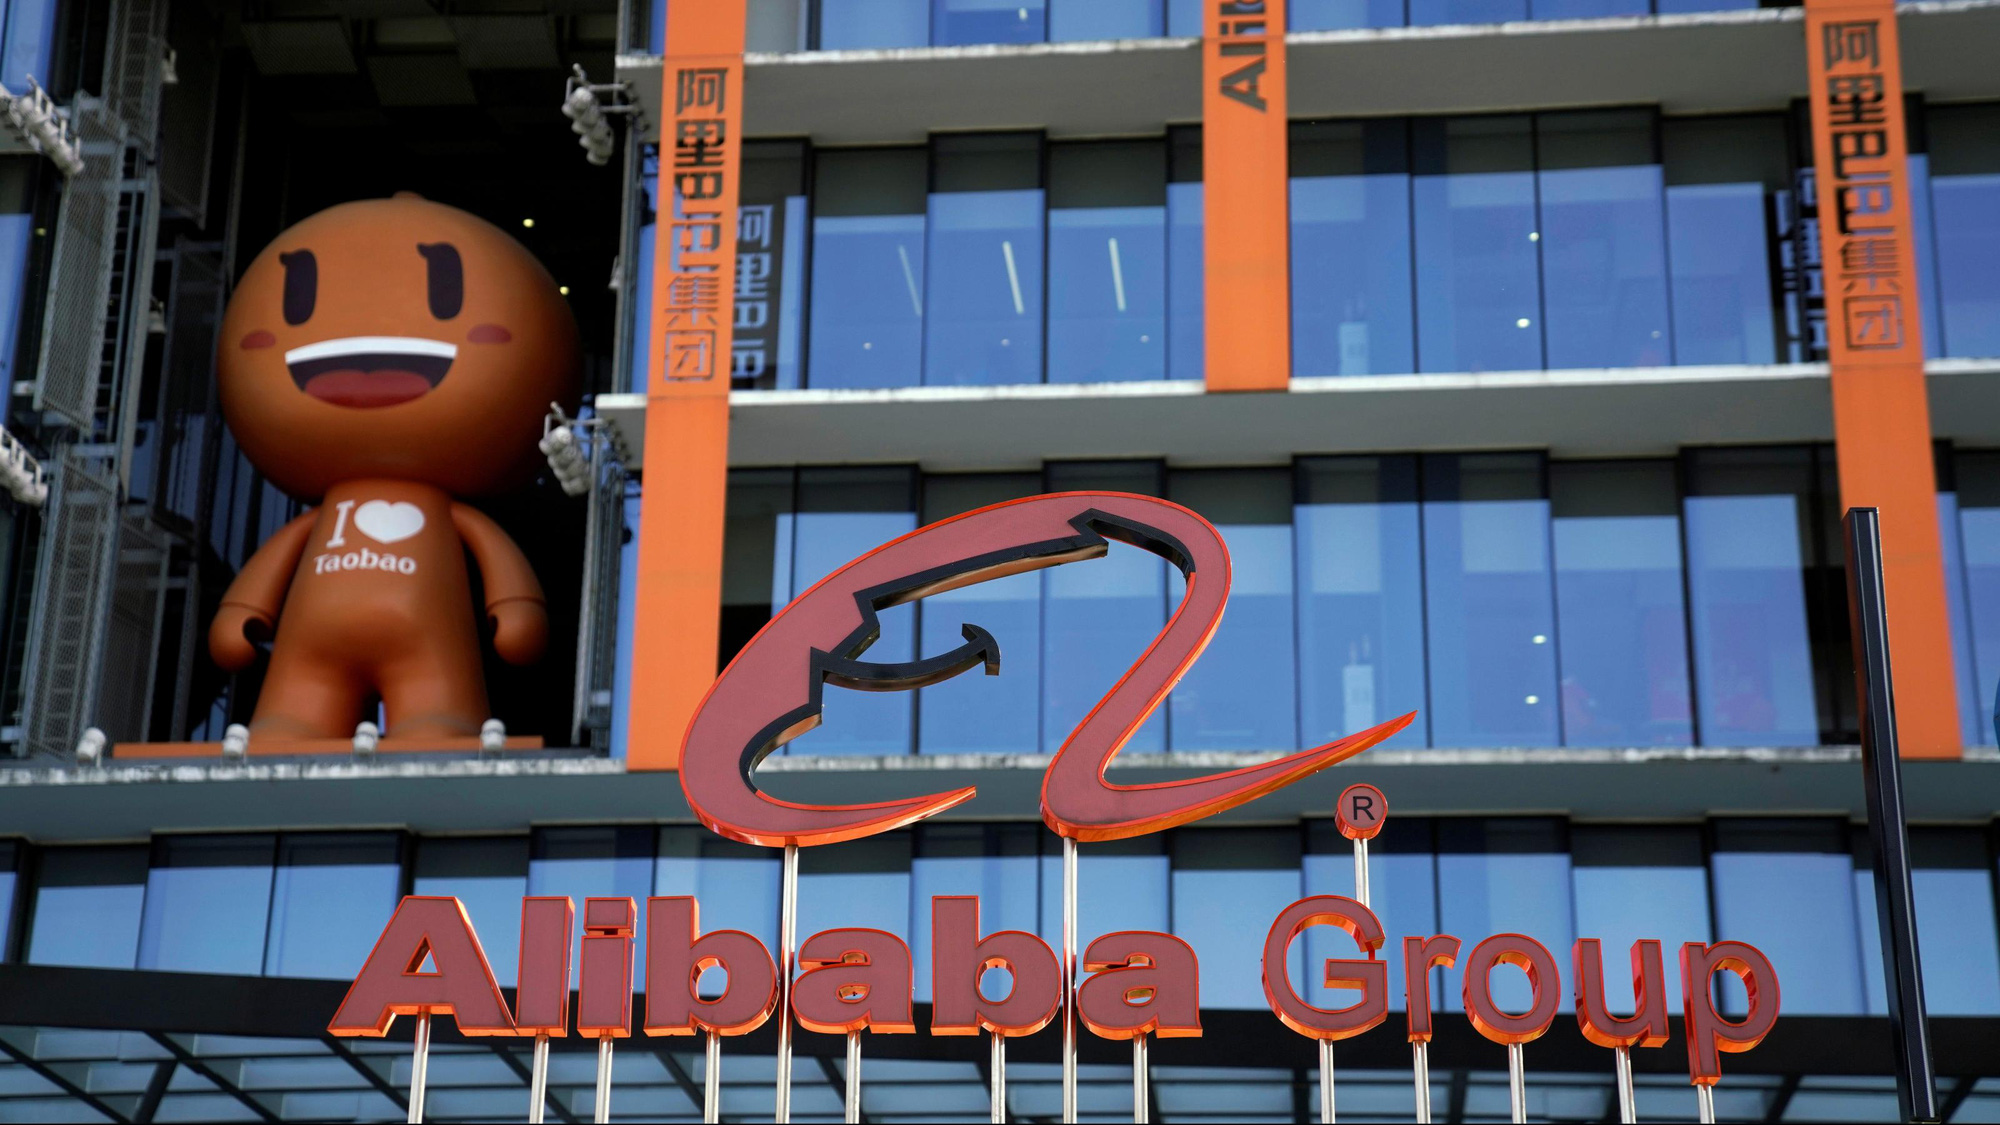 Đằng sau bê bối cưỡng hiếp chấn động Alibaba: Bóc trần văn hóa làm việc độc hại, tình dục hóa phụ nữ của các tập đoàn công nghệ Trung Quốc - Ảnh 1.